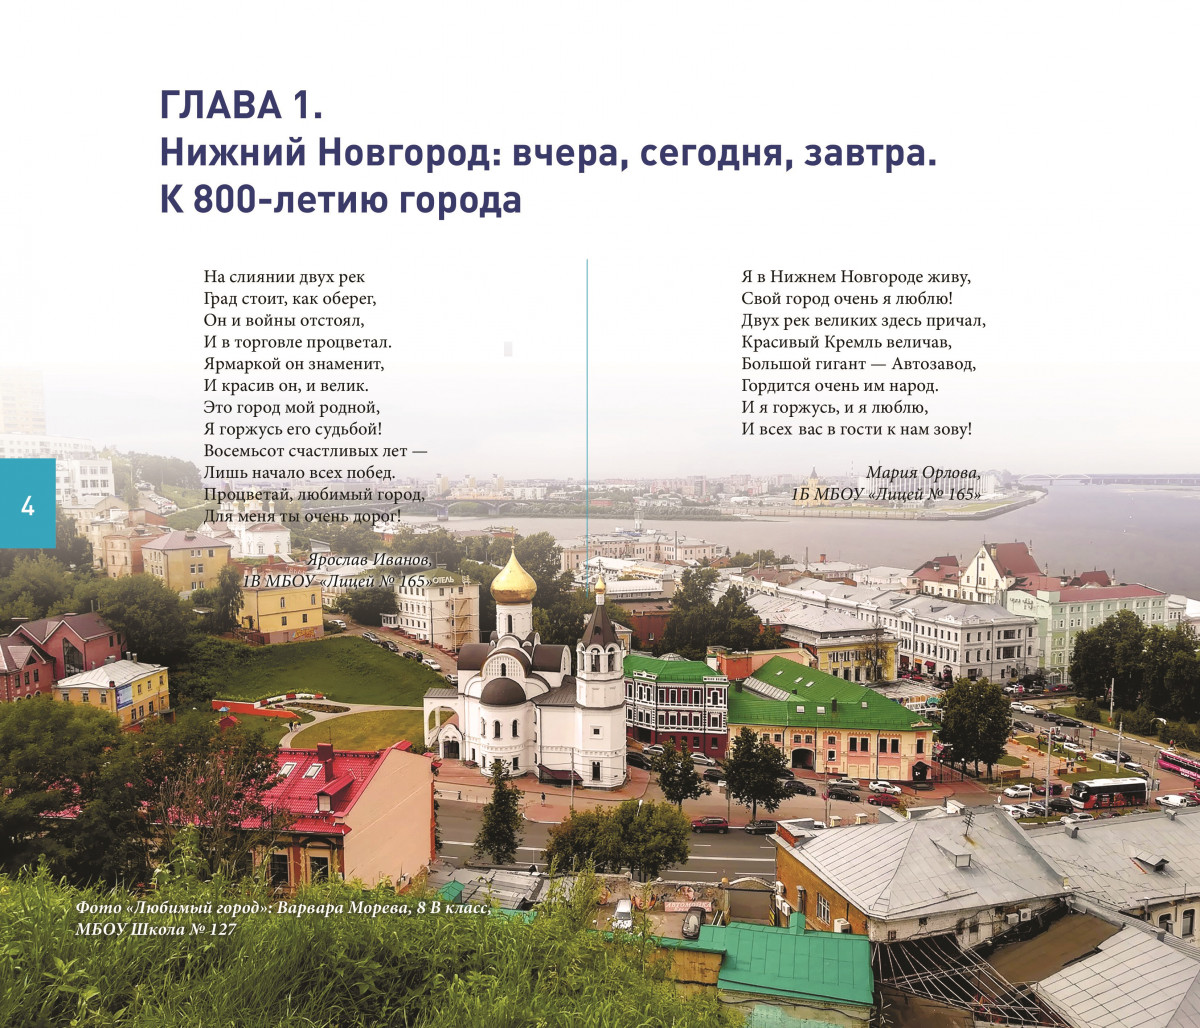 Журнал к 800-летию Нижнего Новгорода, составленный из творческих работ школьников, готовится к печати